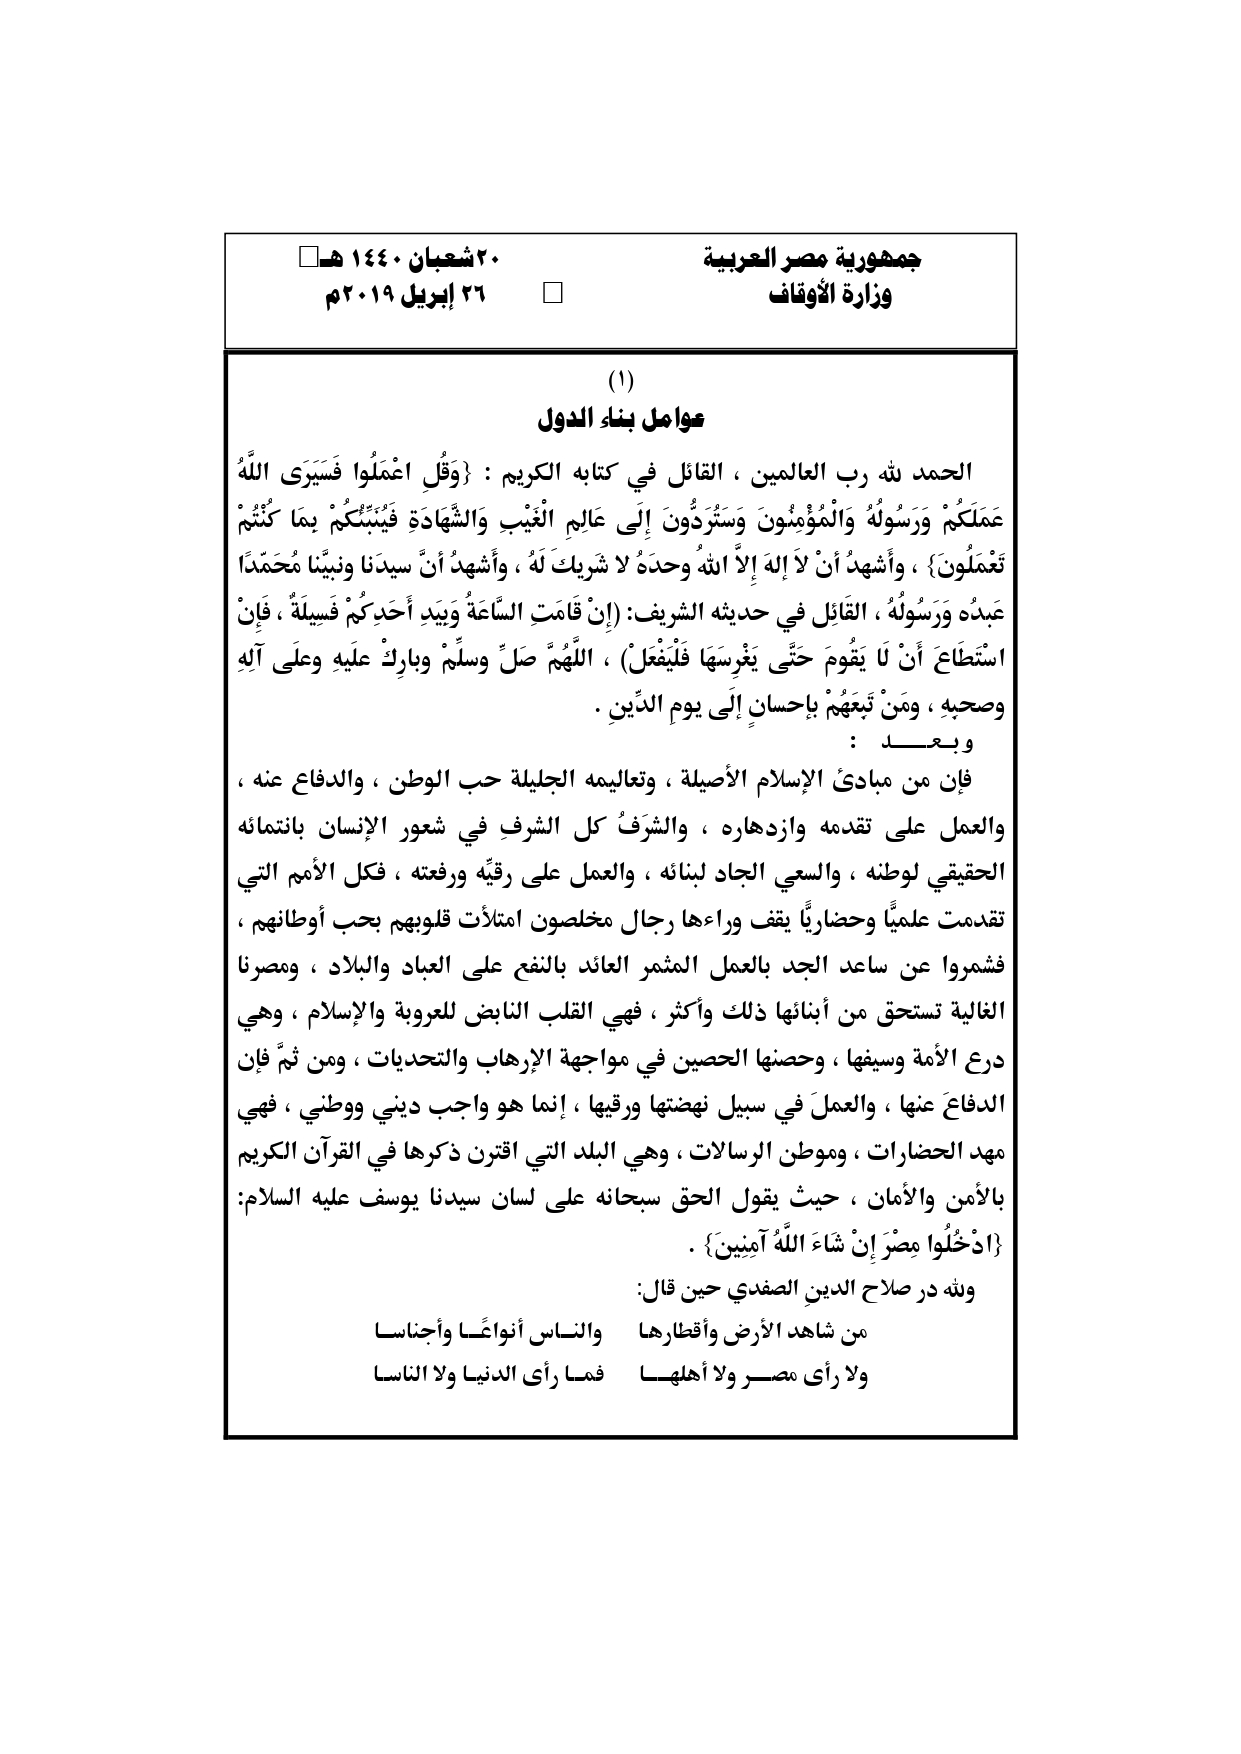  خطبة الجمعة القادمة، خطبة وزارة الأوقاف،خطبة الجمعة القادمة لوزارة الاوقاف المصرية مكتوبة pdf